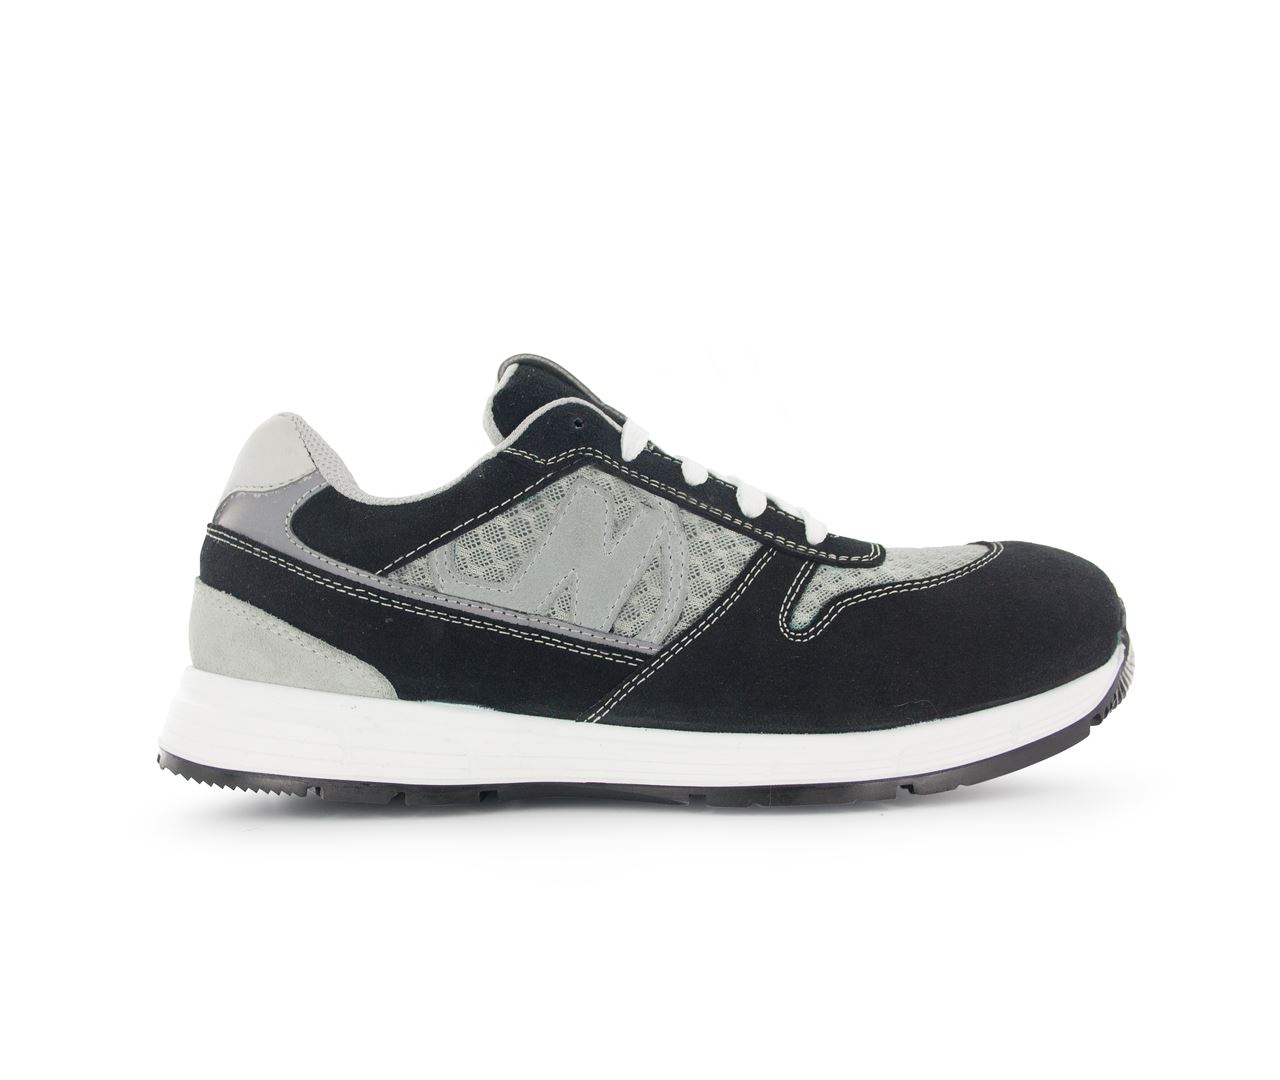 Chaussure de sécurité noir/gris Run Soft T.43 - Nord'Ways - RUN000243000NOGR